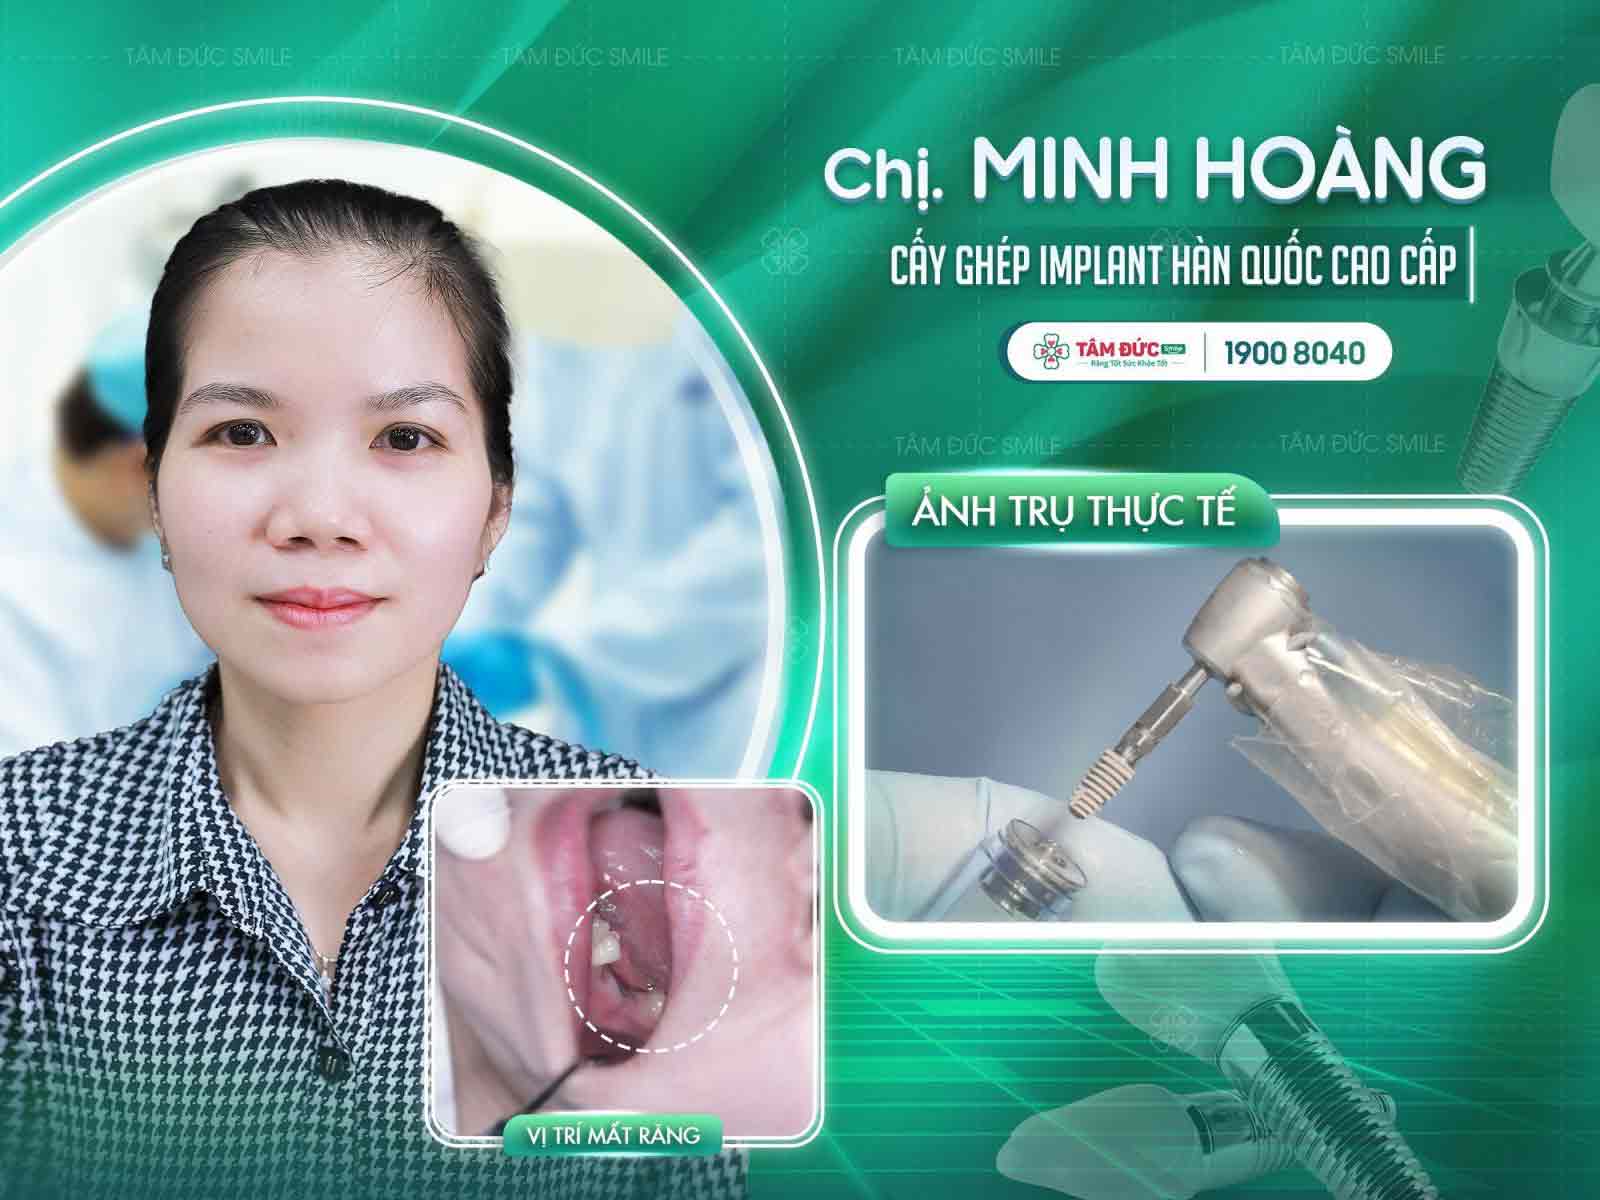 chị Minh Hoàng sau khi cấy Implant tại nha khoa Tâm Đức Smile